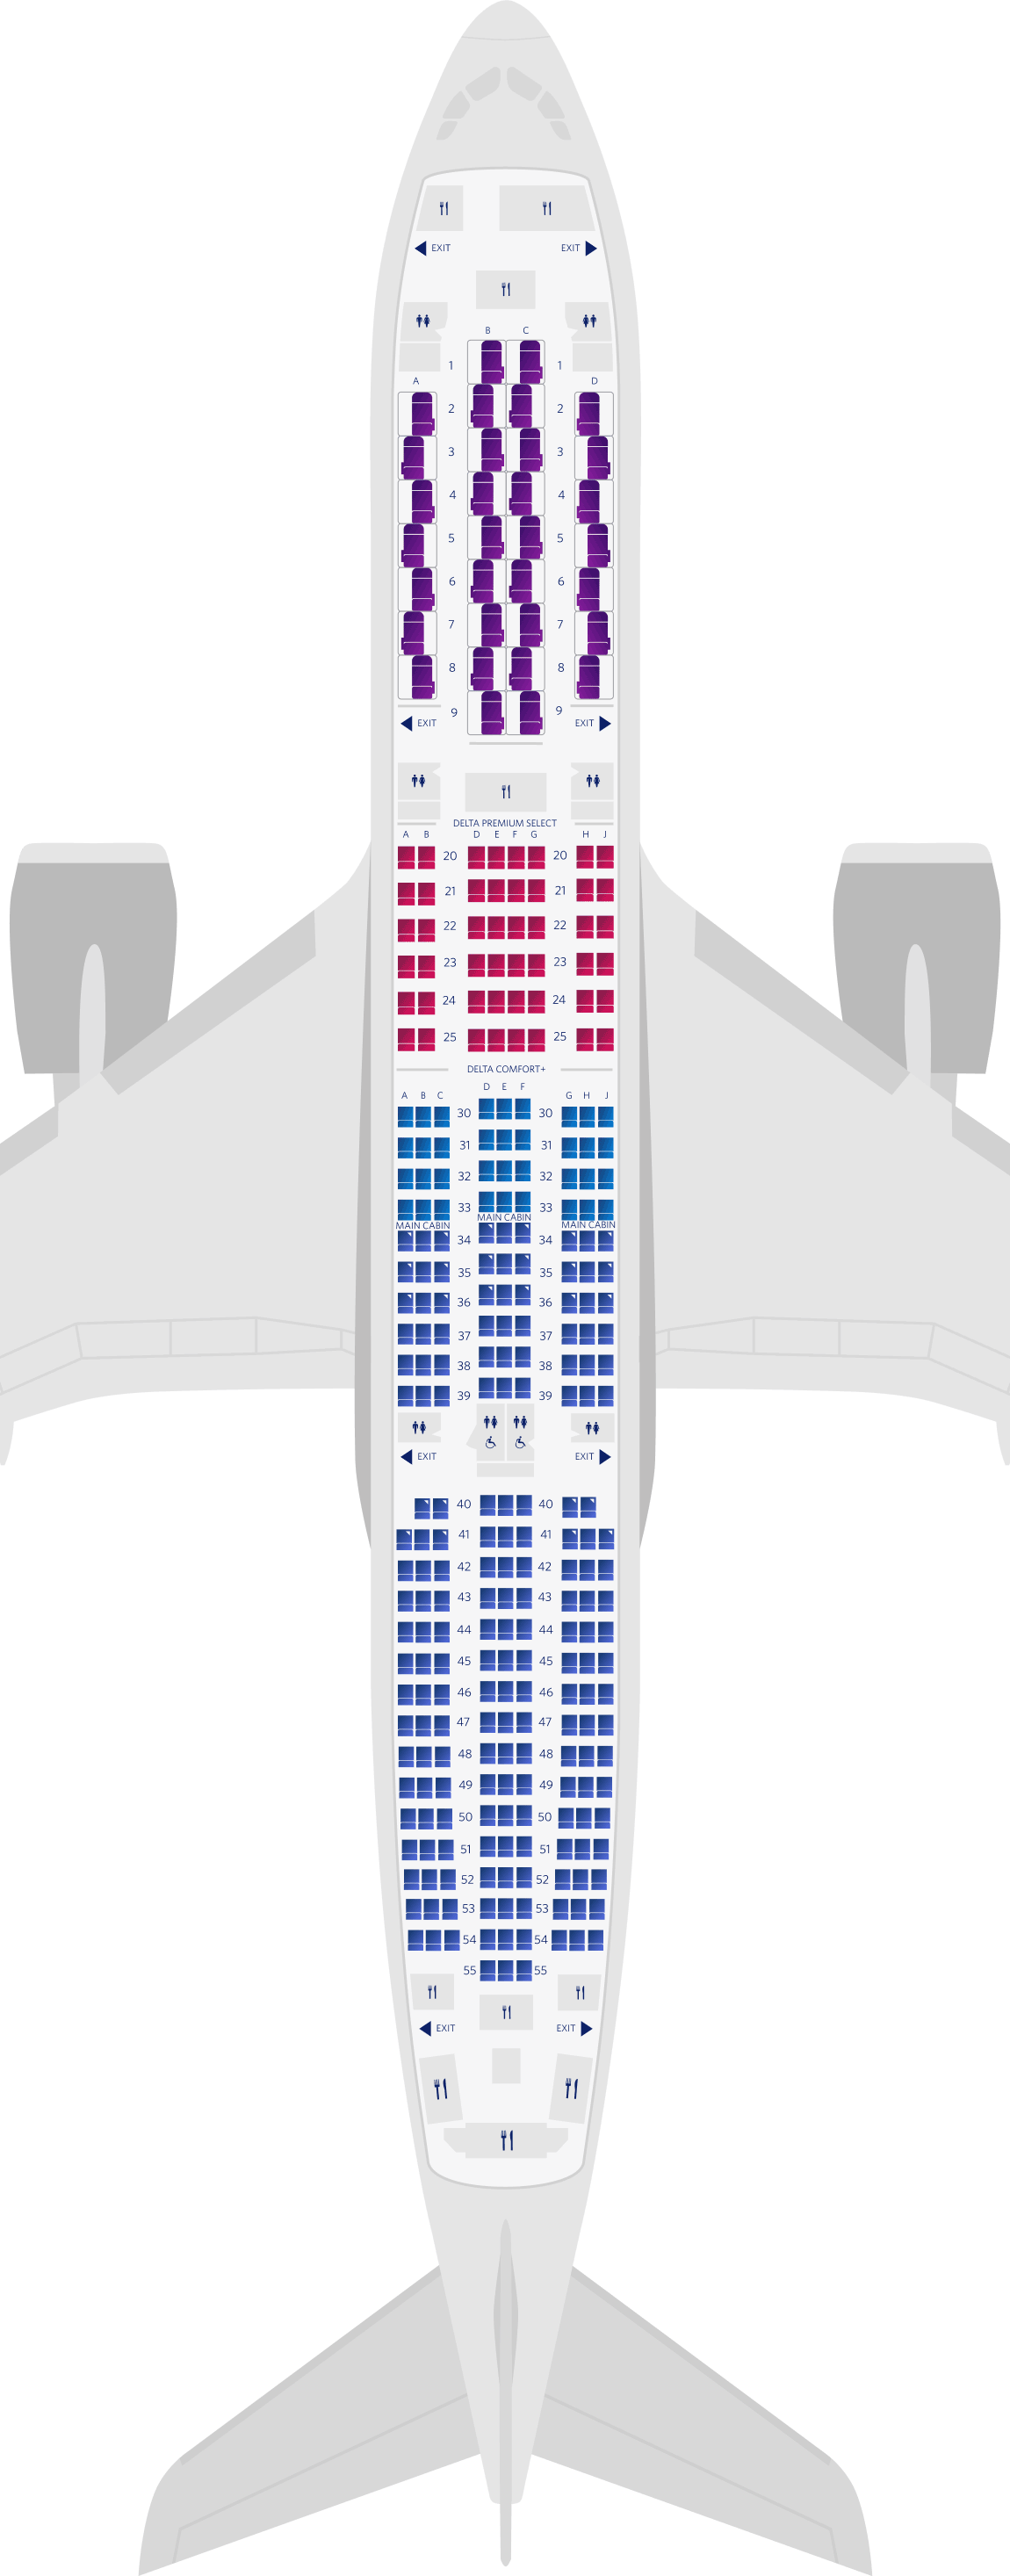  에어버스 A350-900 4-객실 좌석 배치도